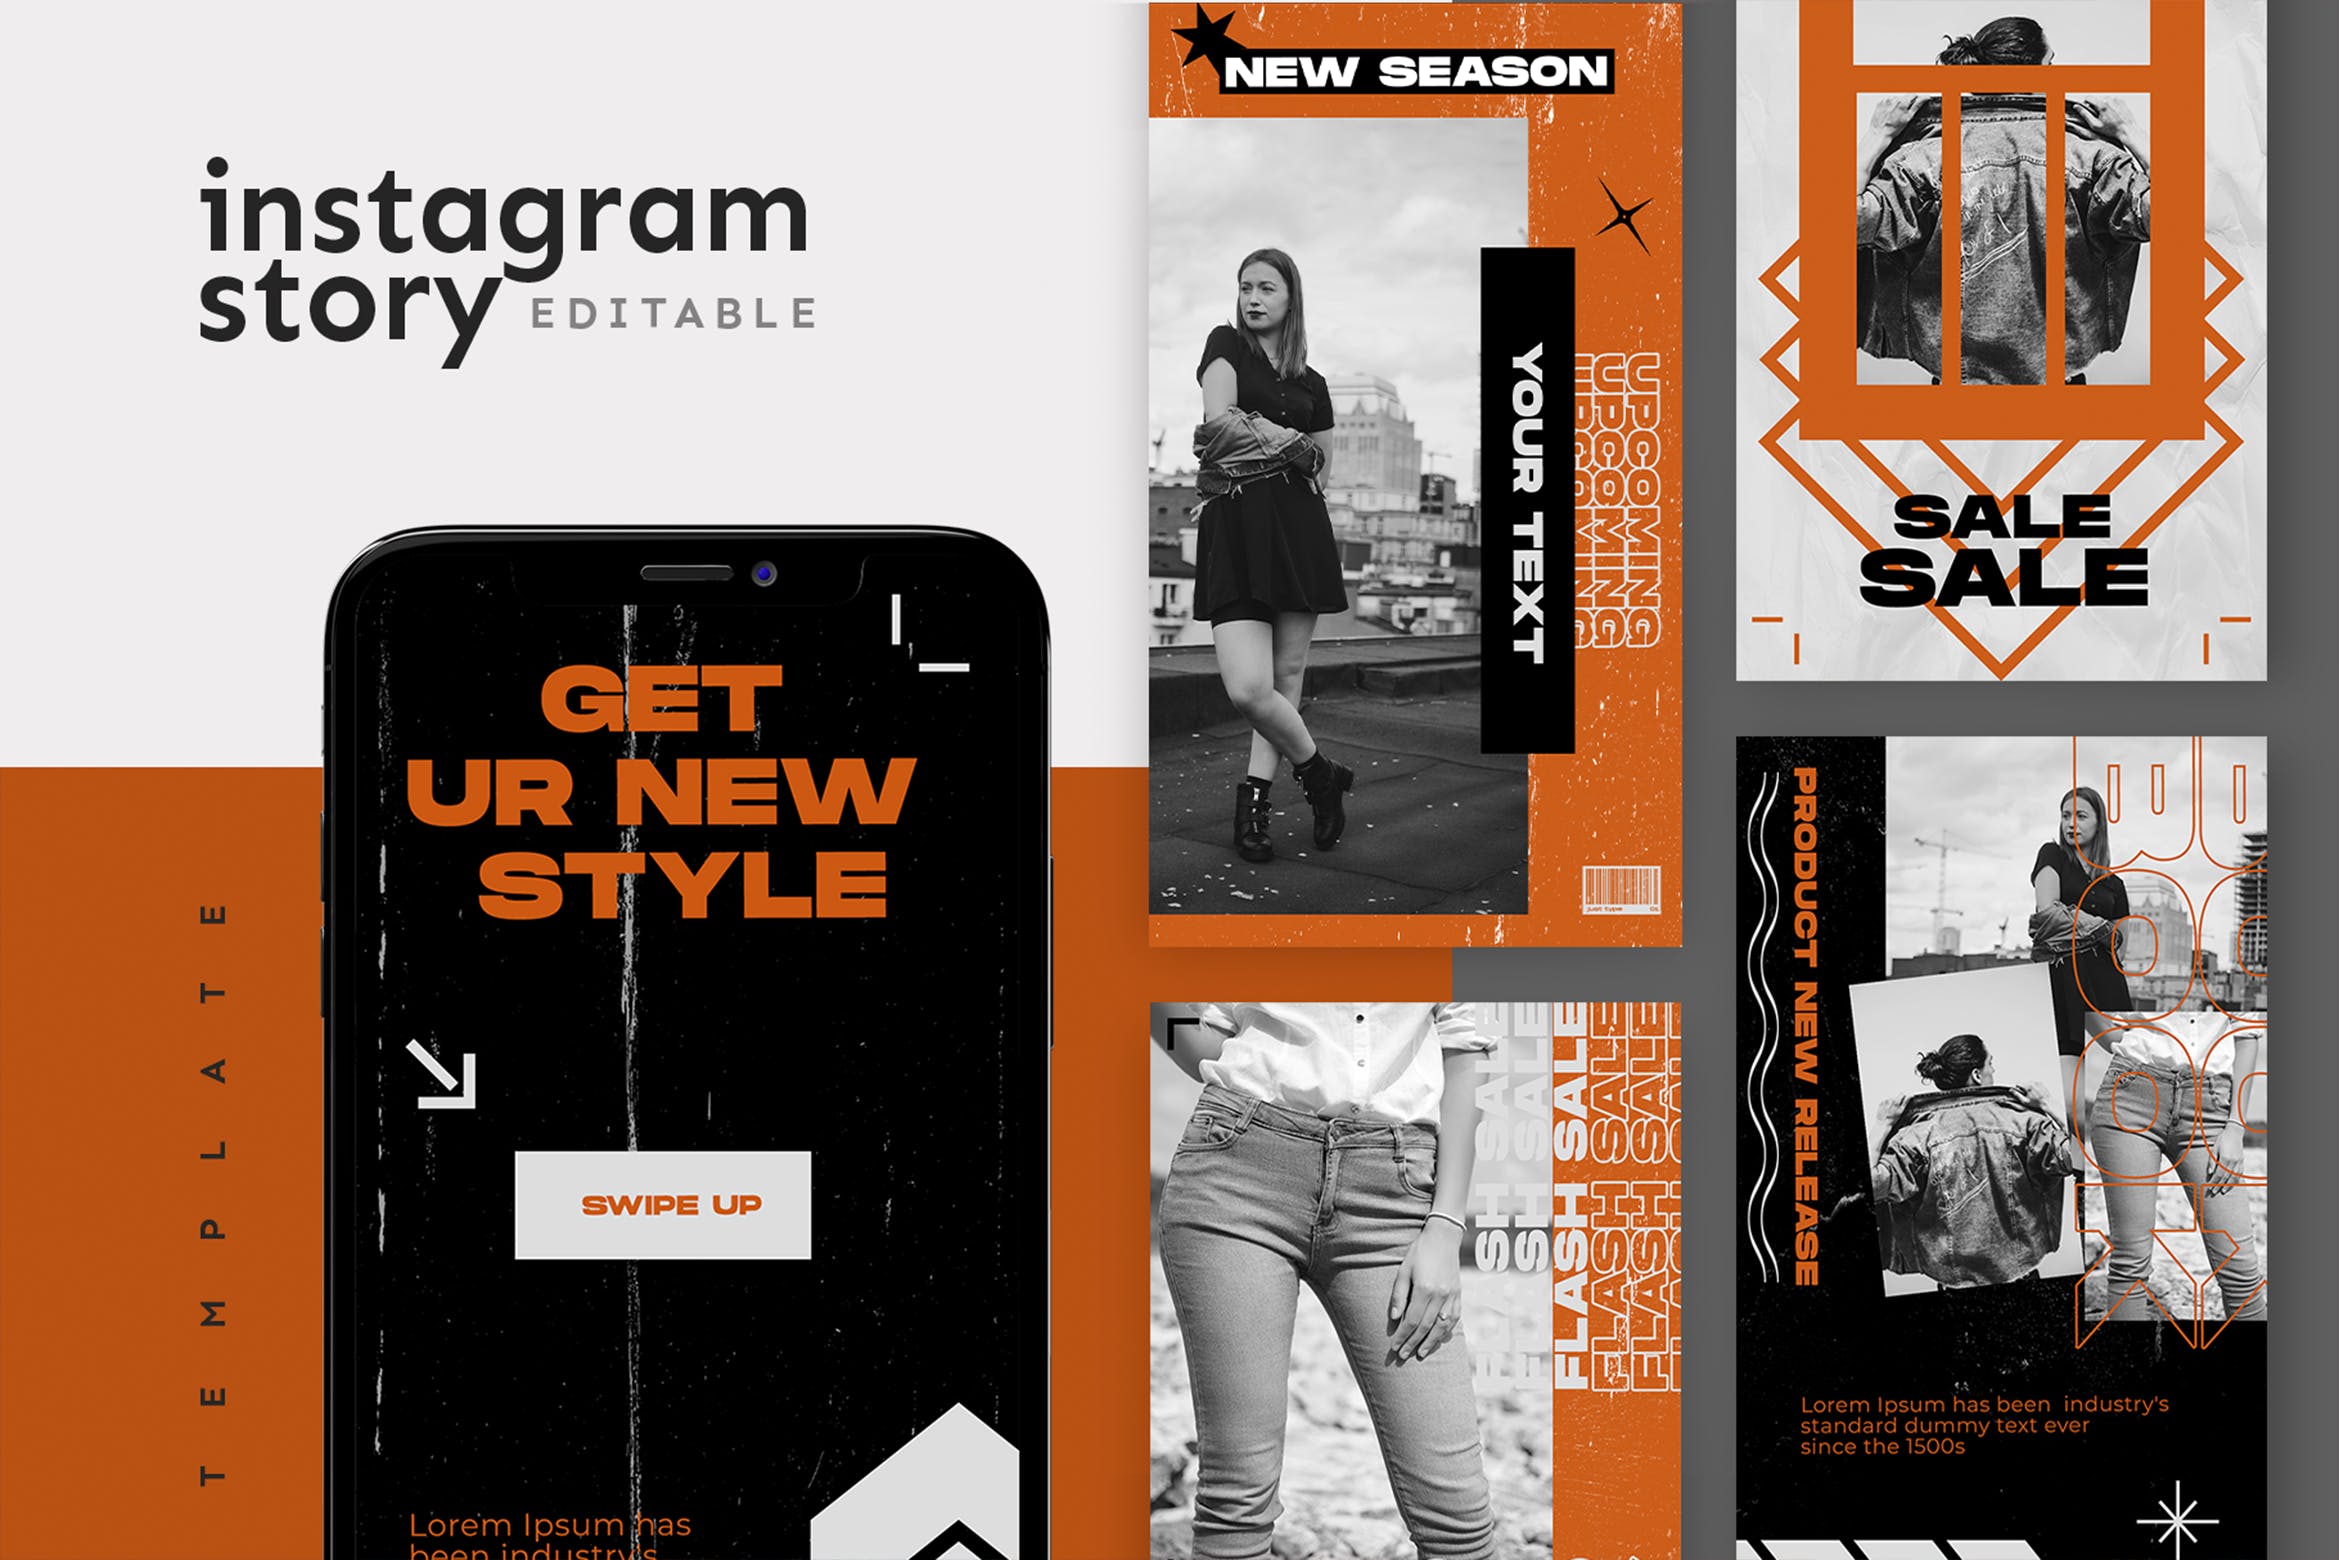 服装品牌换季新品上市Instagram社交推广素材 Instagram Story Template插图